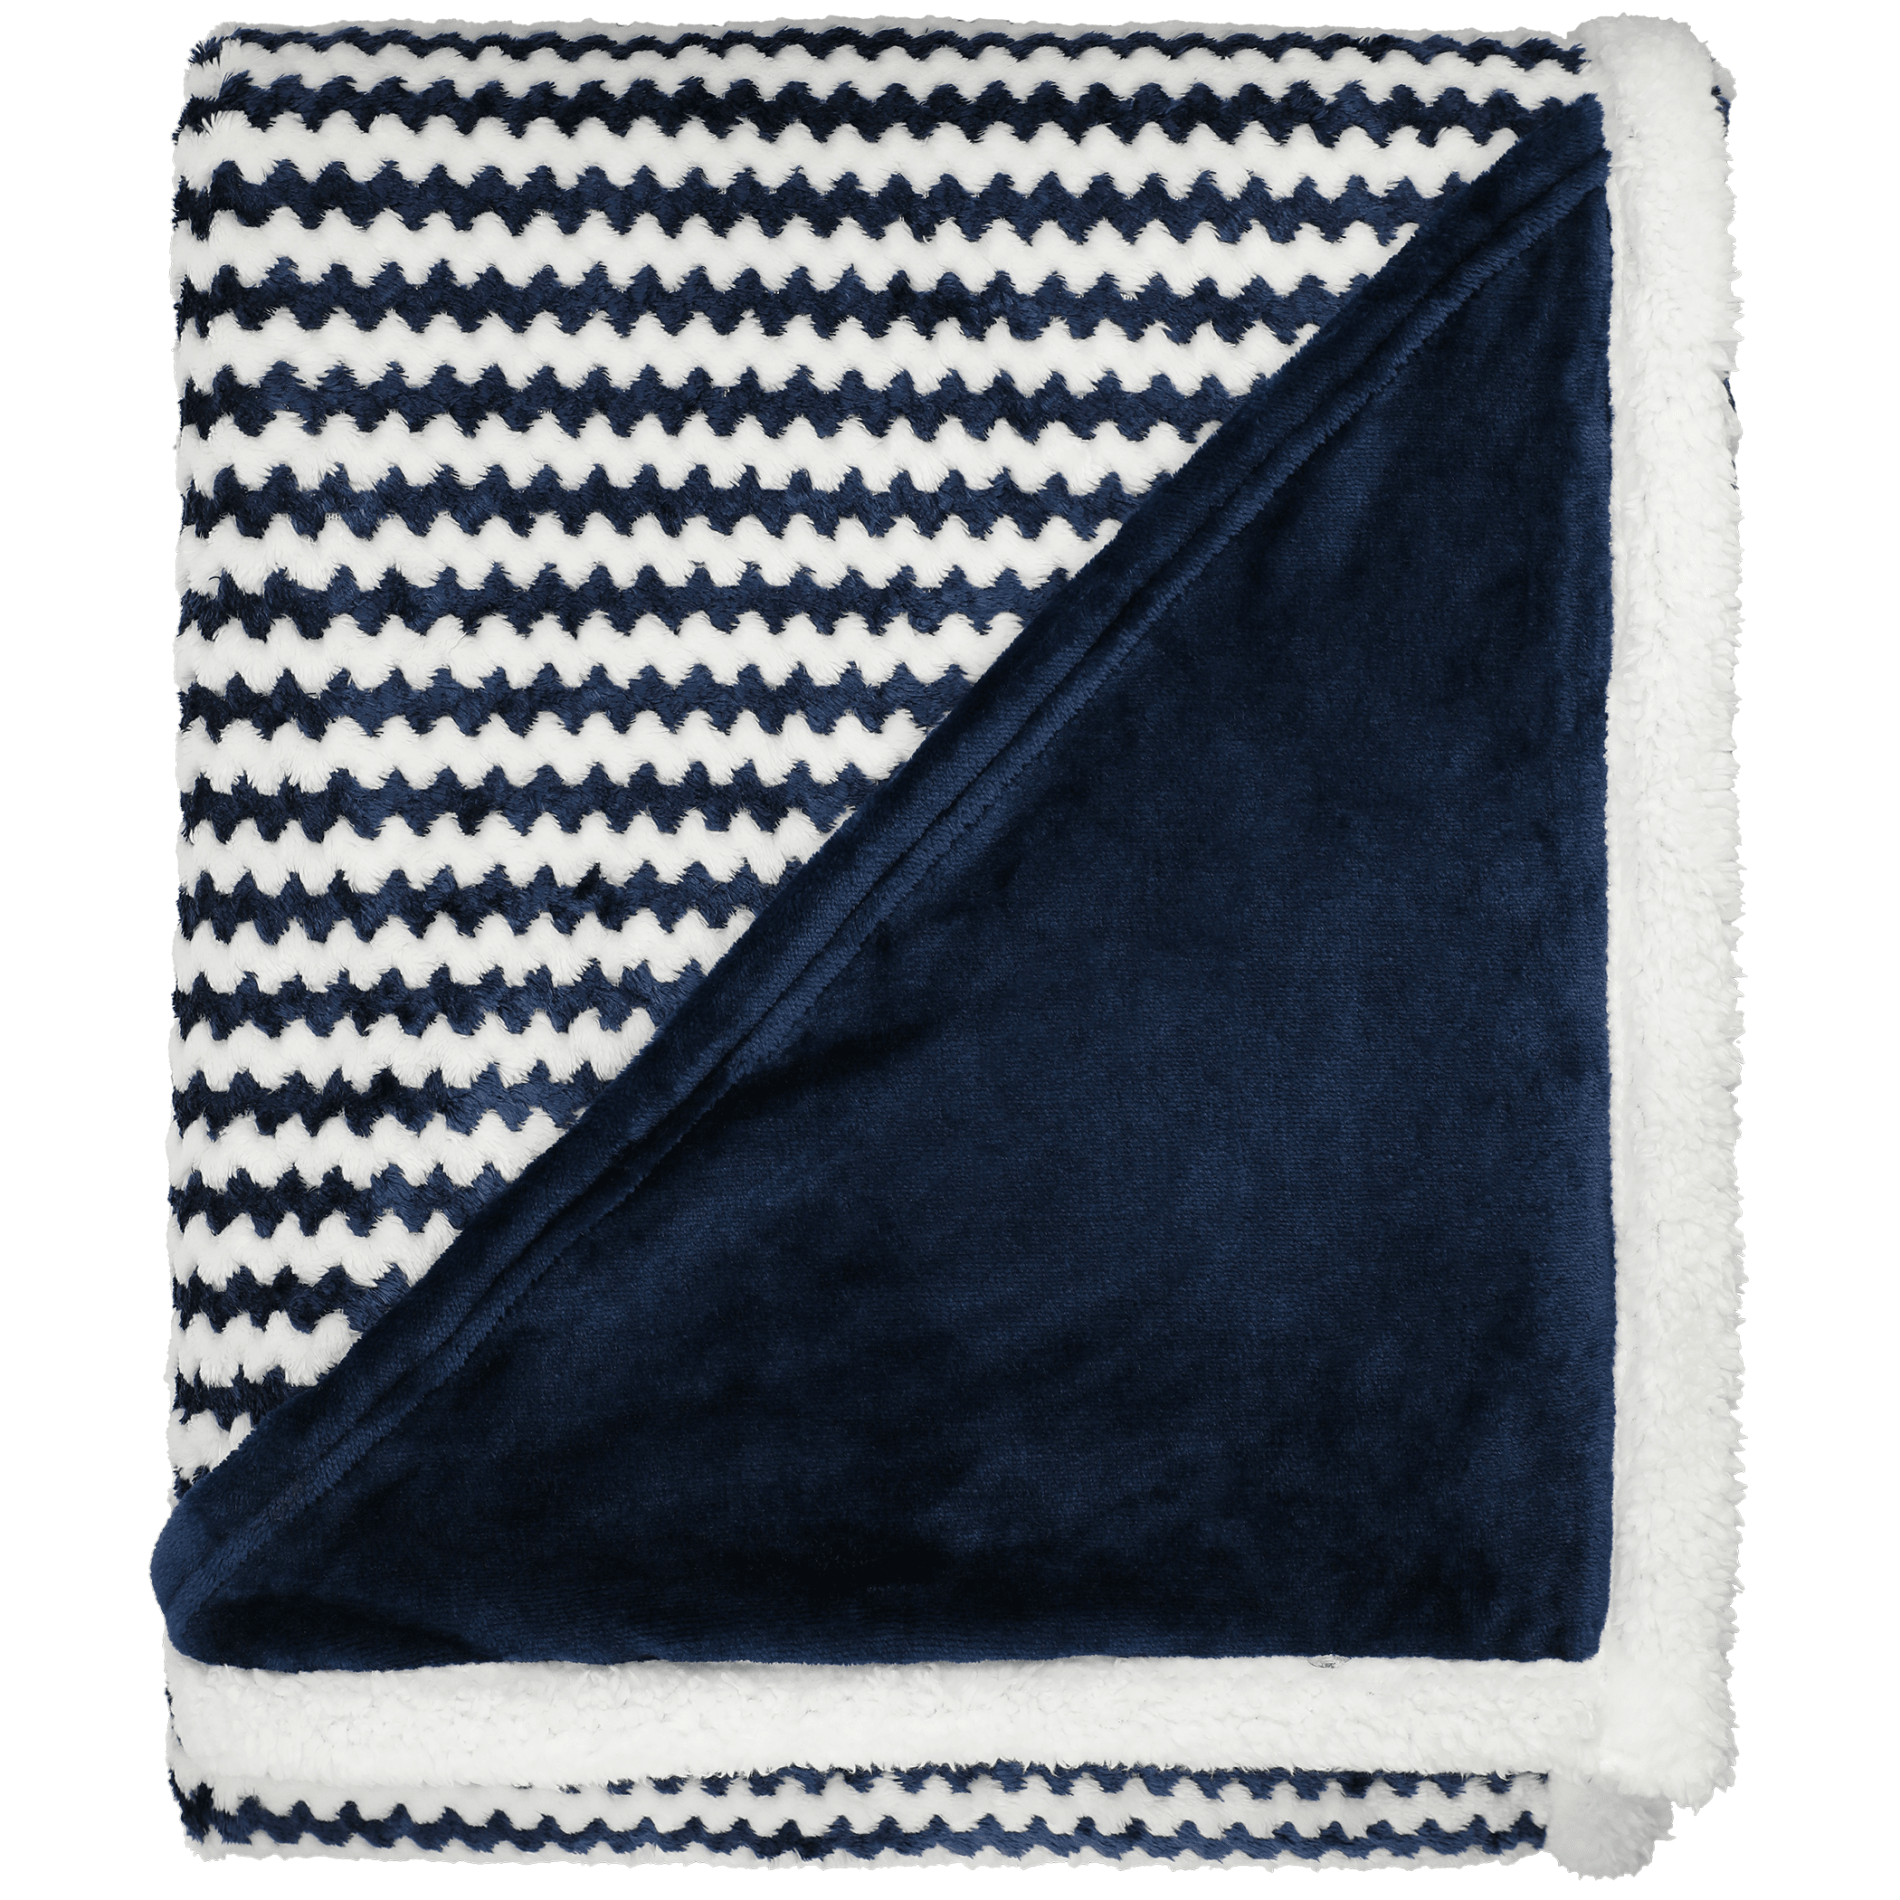 Field & Co. 1081-12 - Chevron Striped Sherpa Blanket